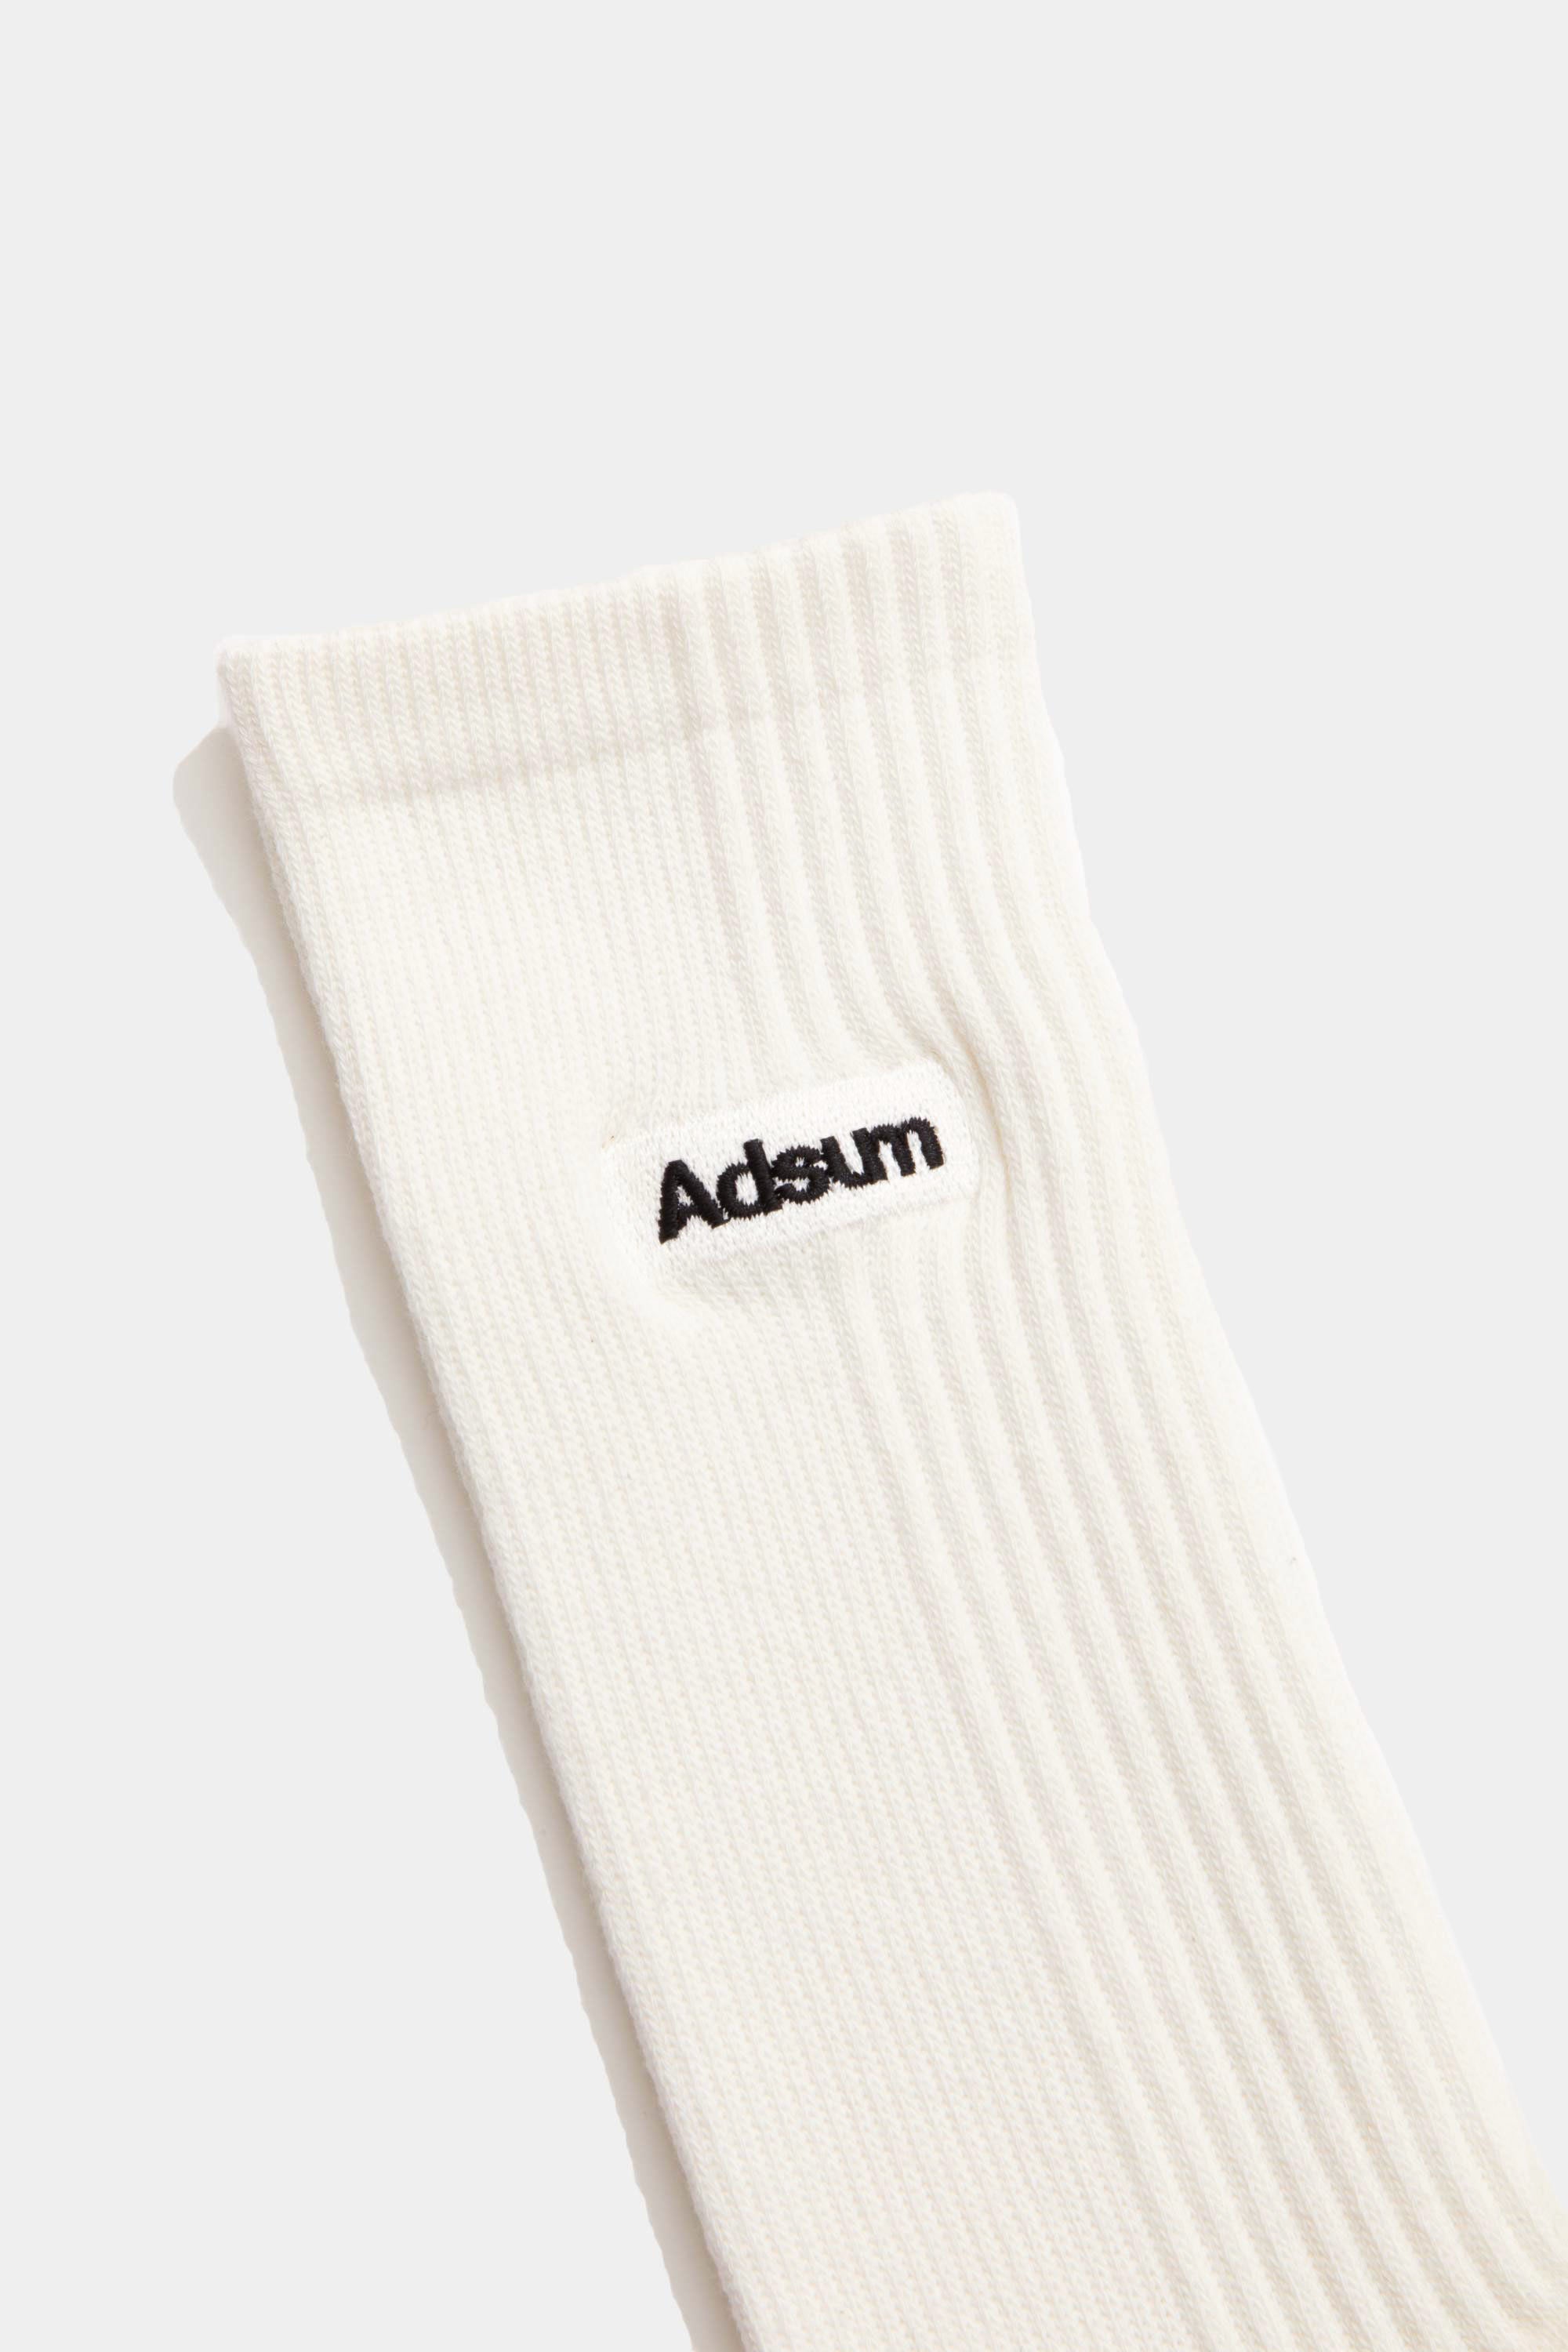 Comfort Sock - White / Adsum